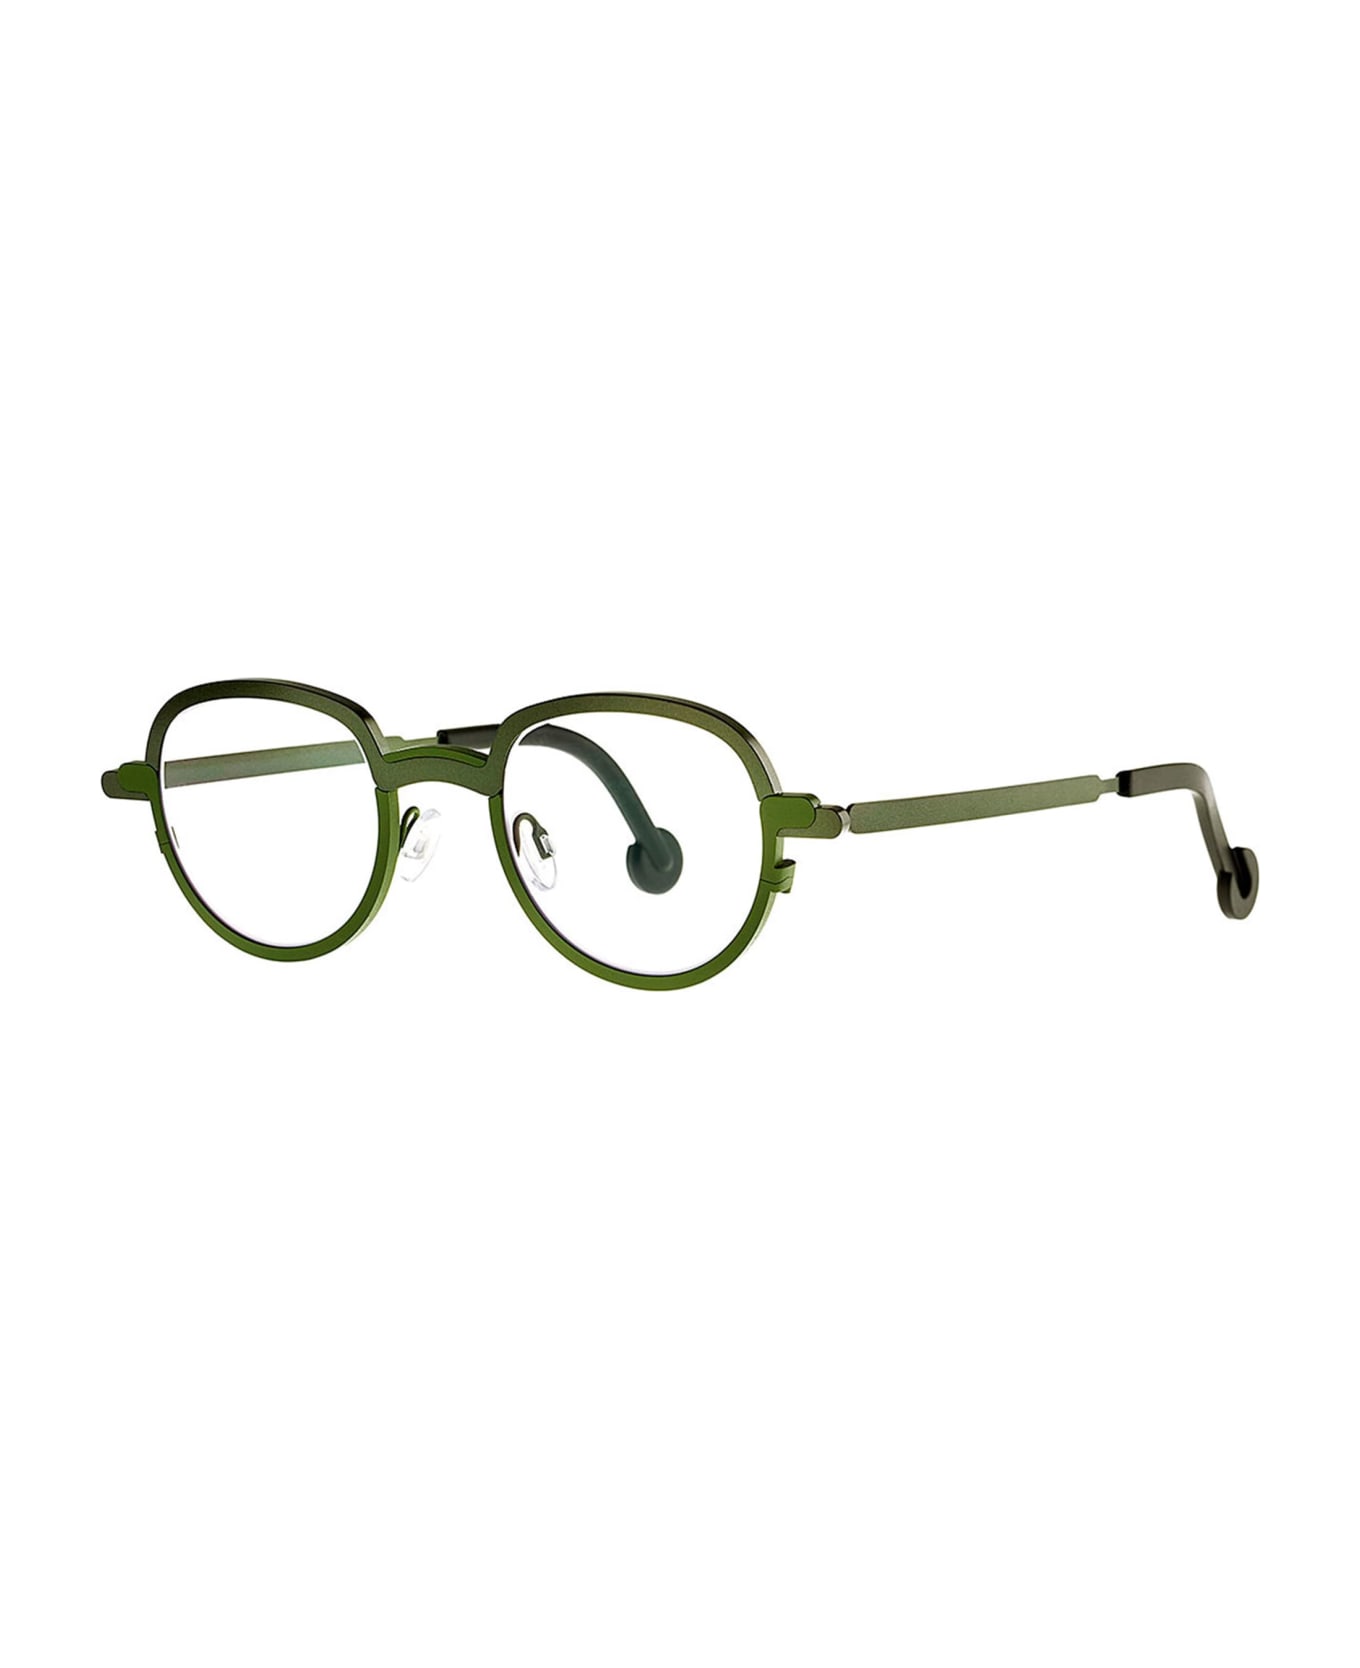 Theo Eyewear Mong Kok - 485 Rx Glasses - green アイウェア